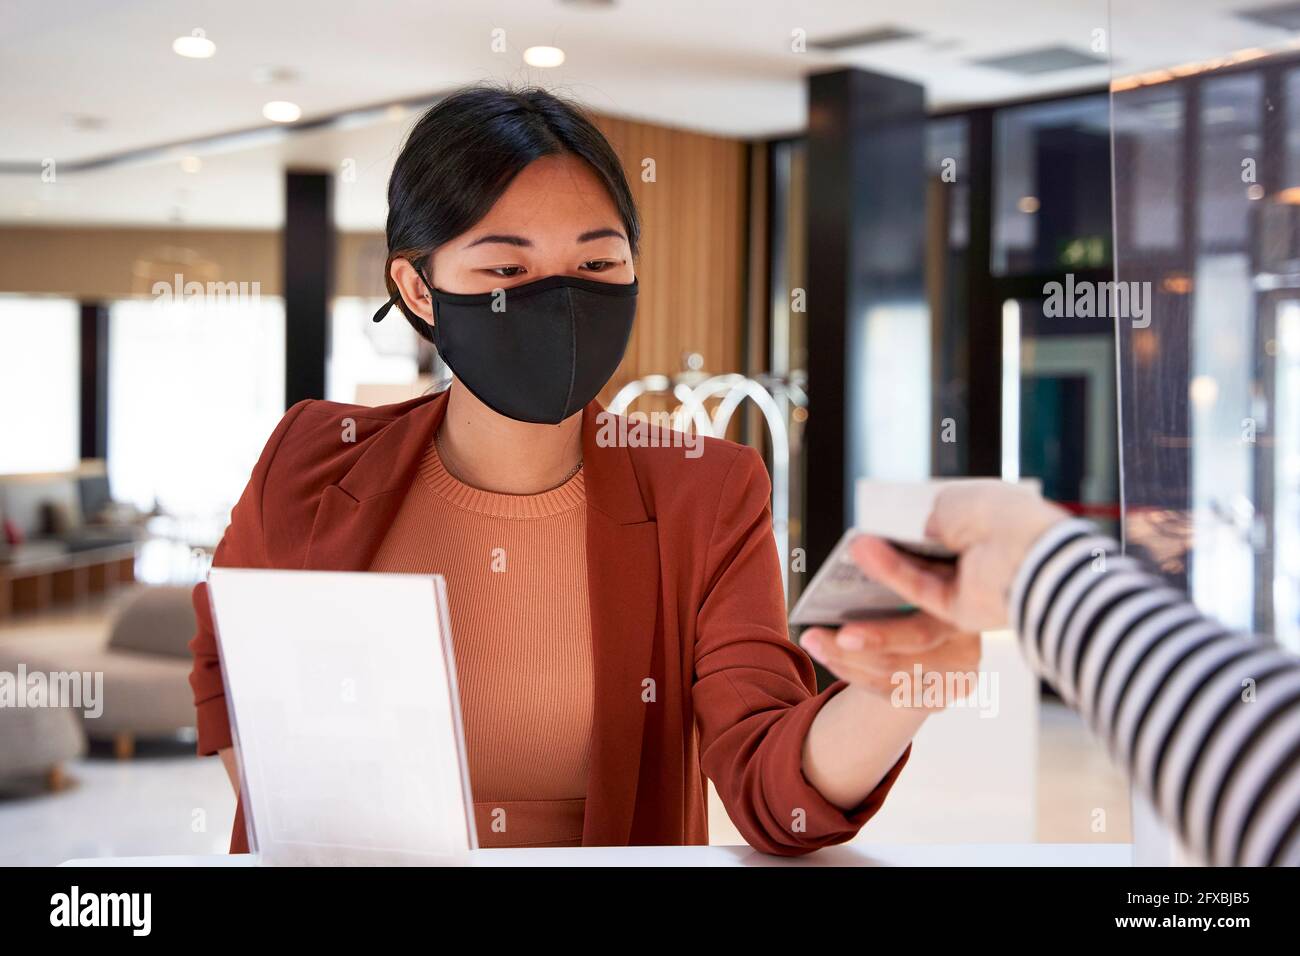 Une jeune femme sous masque prend la clé de la réceptionniste de l'hôtel Banque D'Images